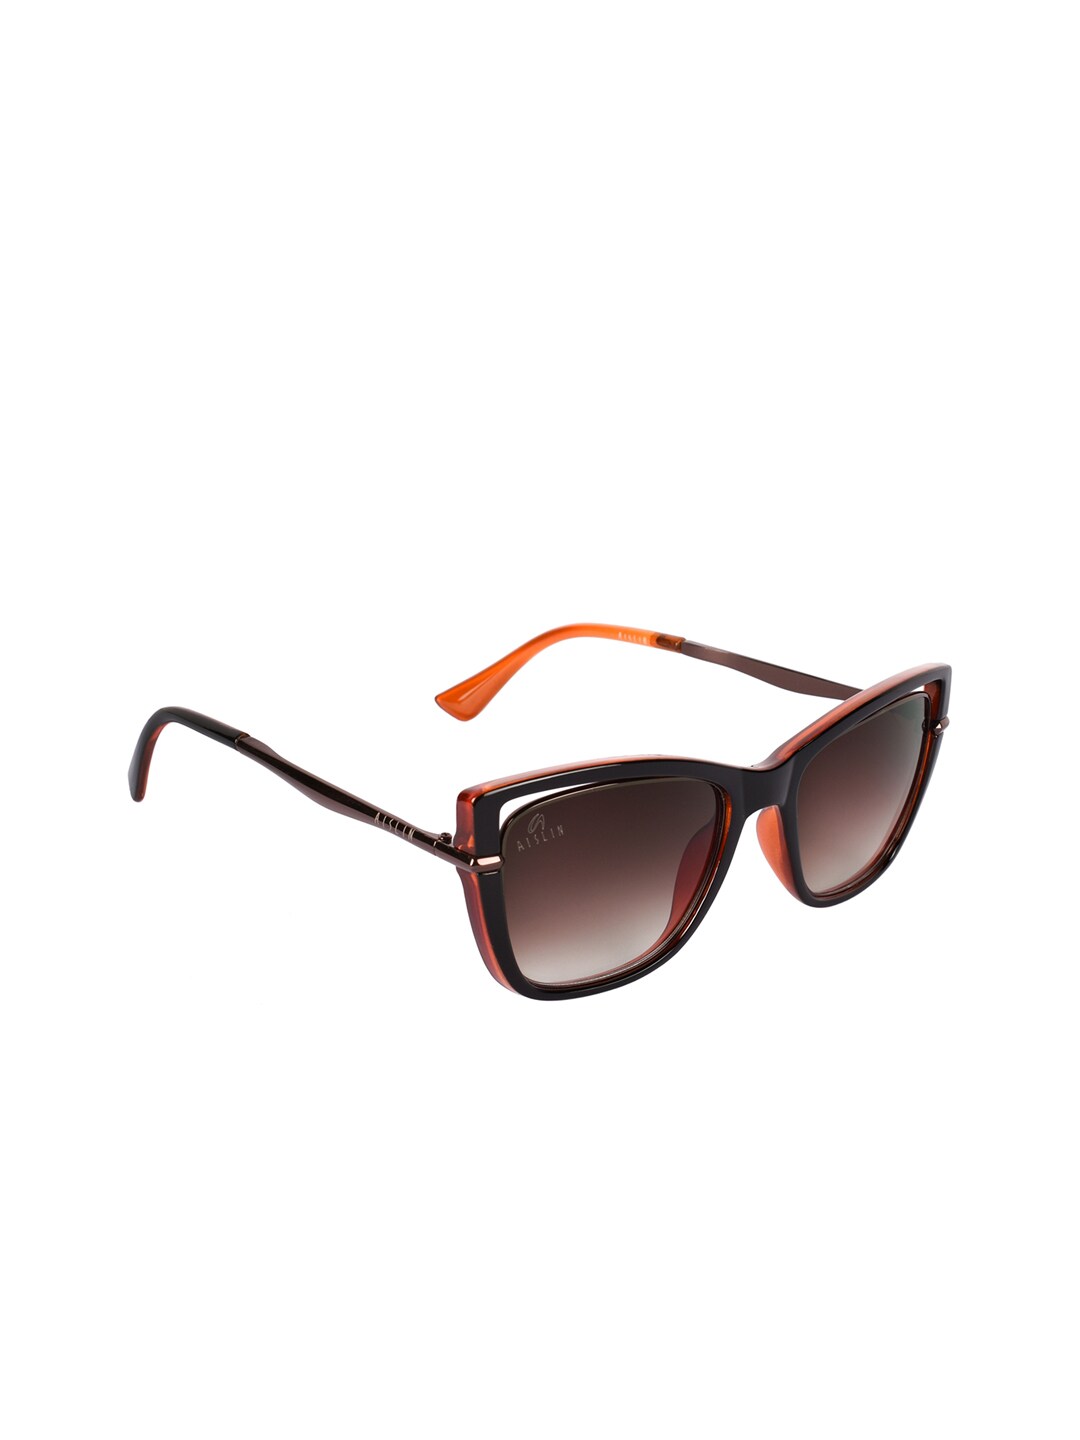 Aislin Women Brown Lens & Cateye Sunglasses ES_14476-82-AS-2024-BRW-BRW-CEWF-59-G